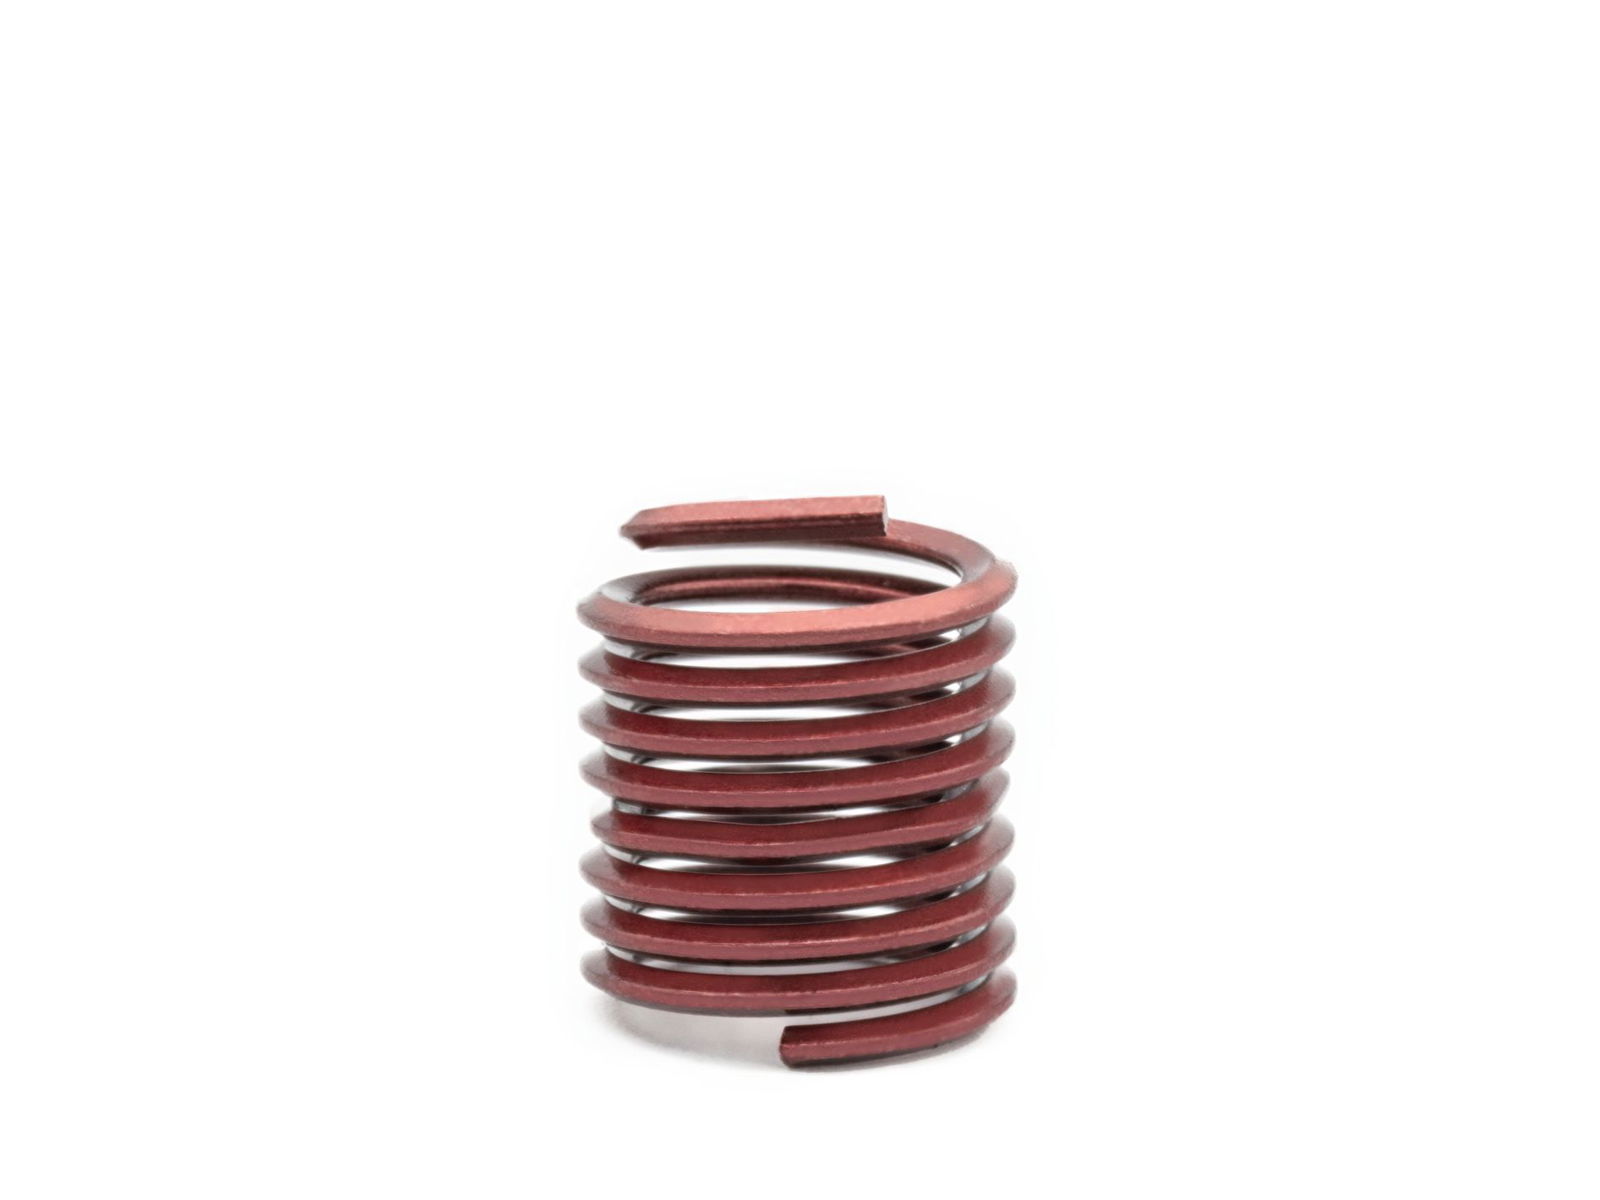 BaerCoil Wire Thread Inserts BSW 5/16 x 18 - 1.5 D (11.91 mm) - screw grip (screw locking) - 100 pcs.